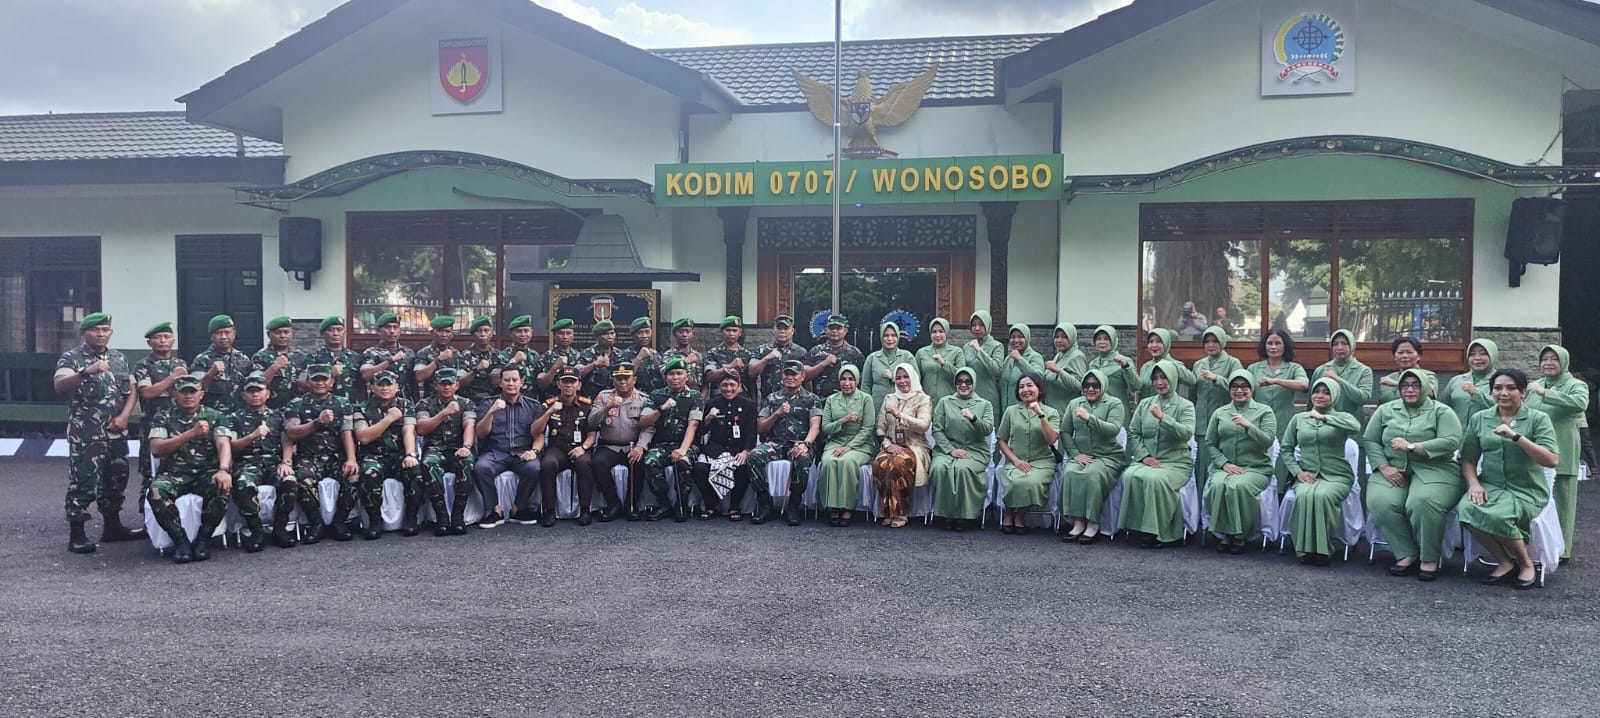 Kunjungi Wonosobo, Pangdam IV: Jangan Rusak Citra TNI